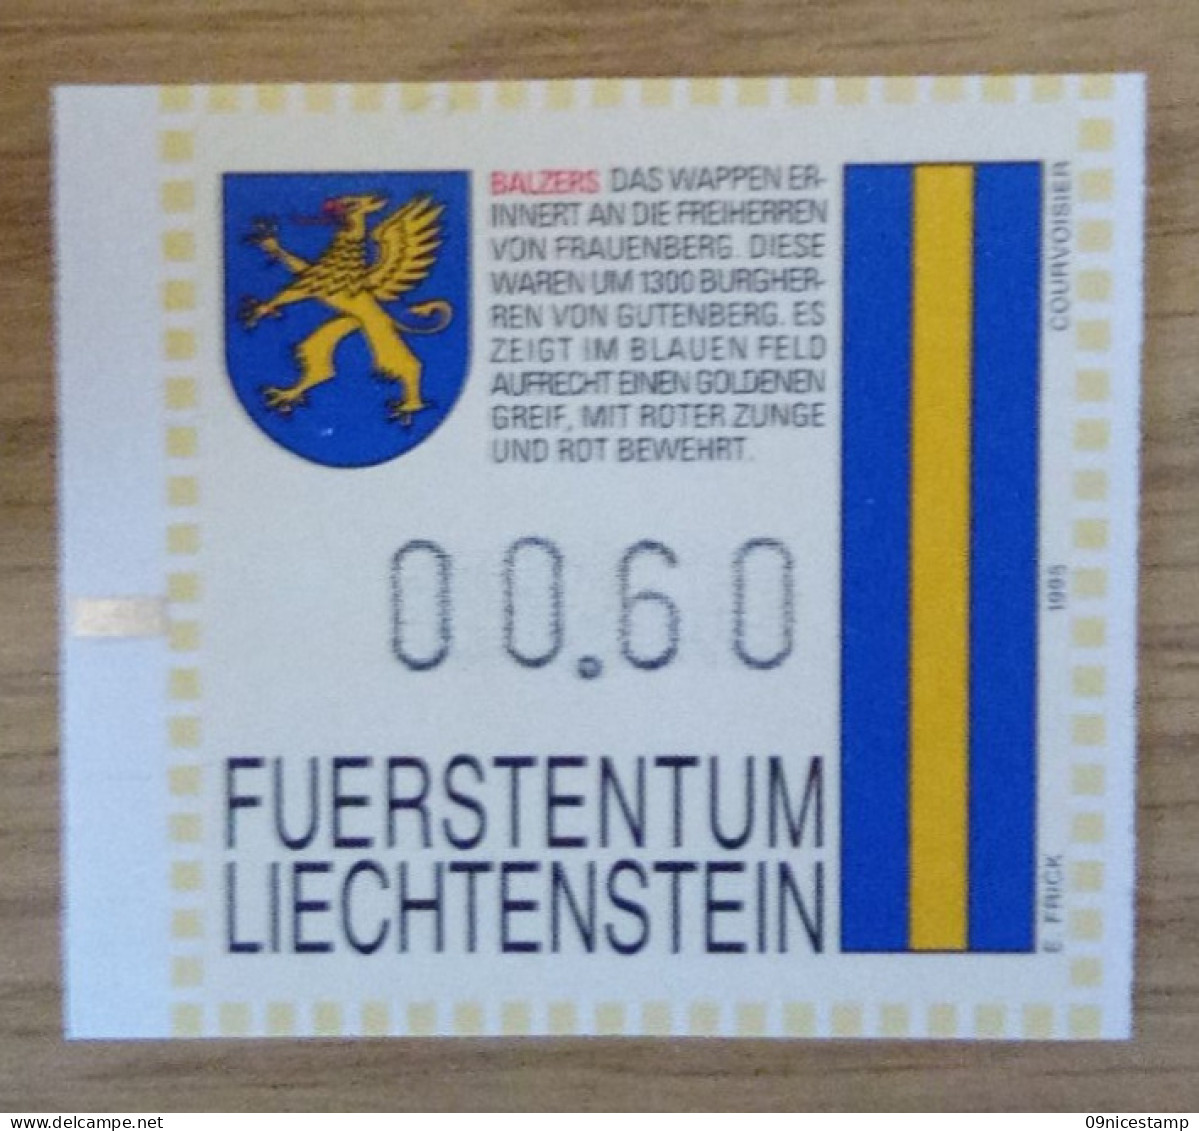 Liechtenstein, Slotmachine - Automaatzegels [ATM]